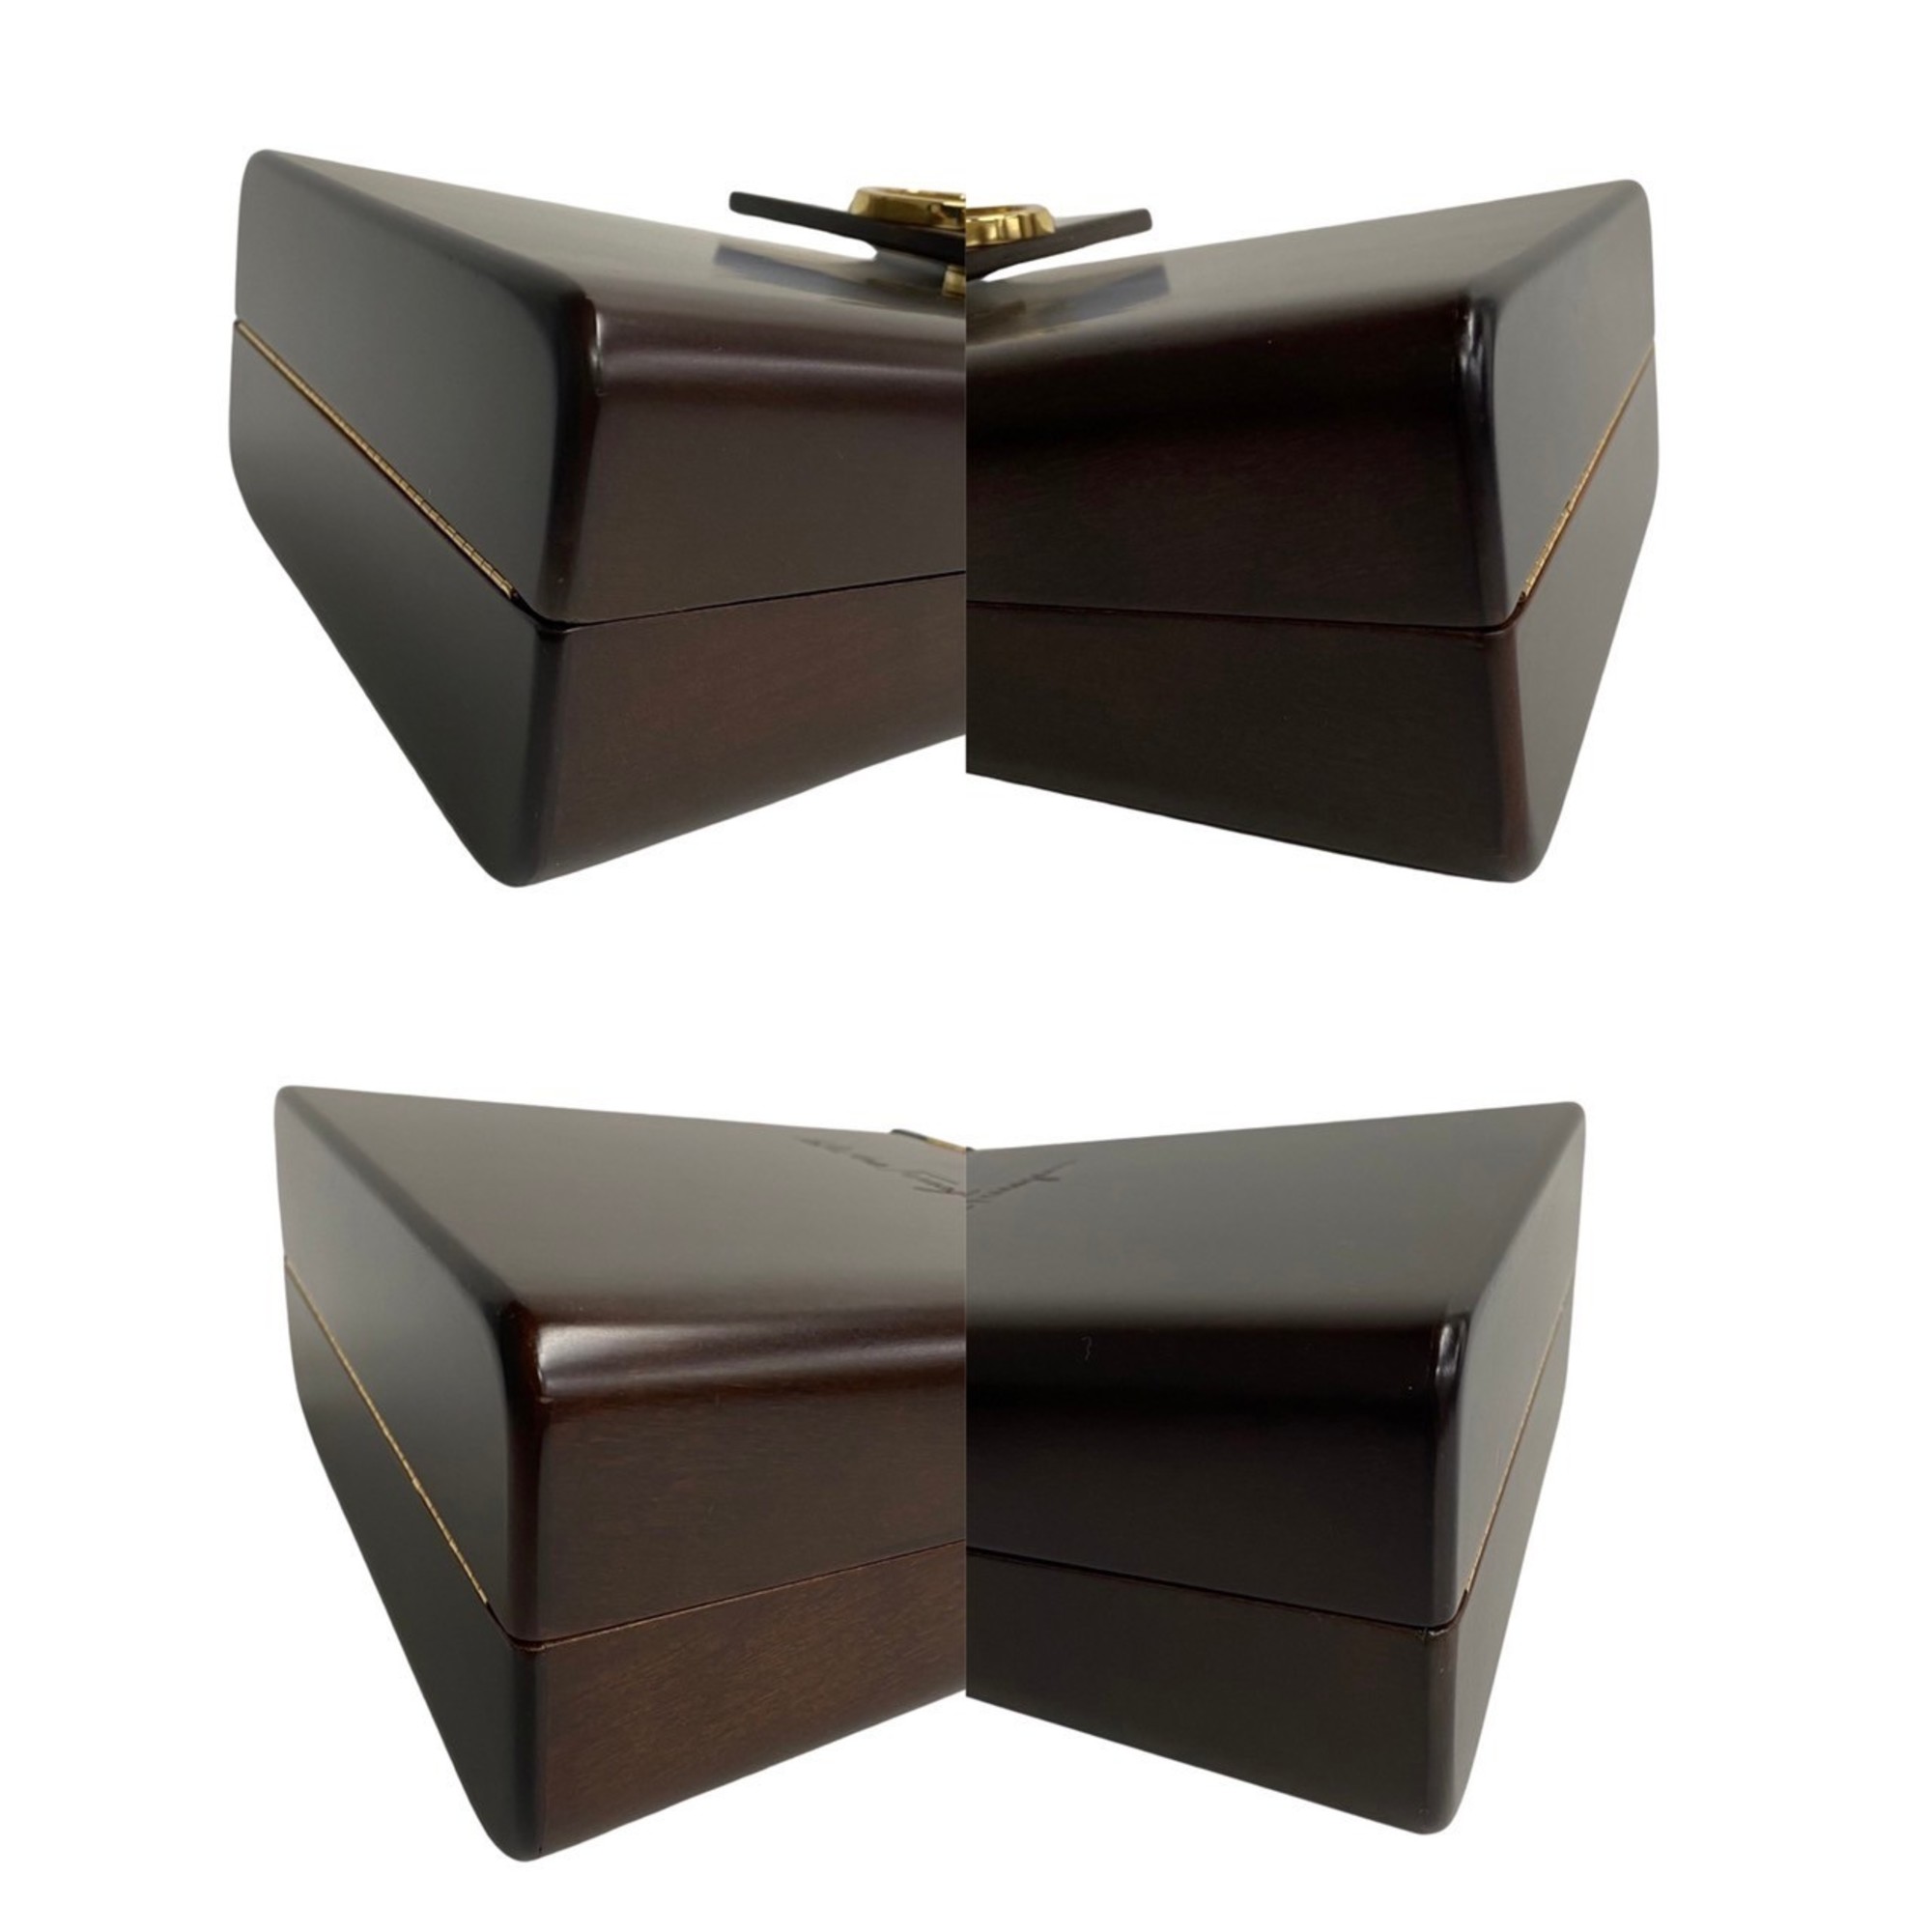 Salvatore Ferragamo Gancini metal fittings wood handbag tote bag brown 29158